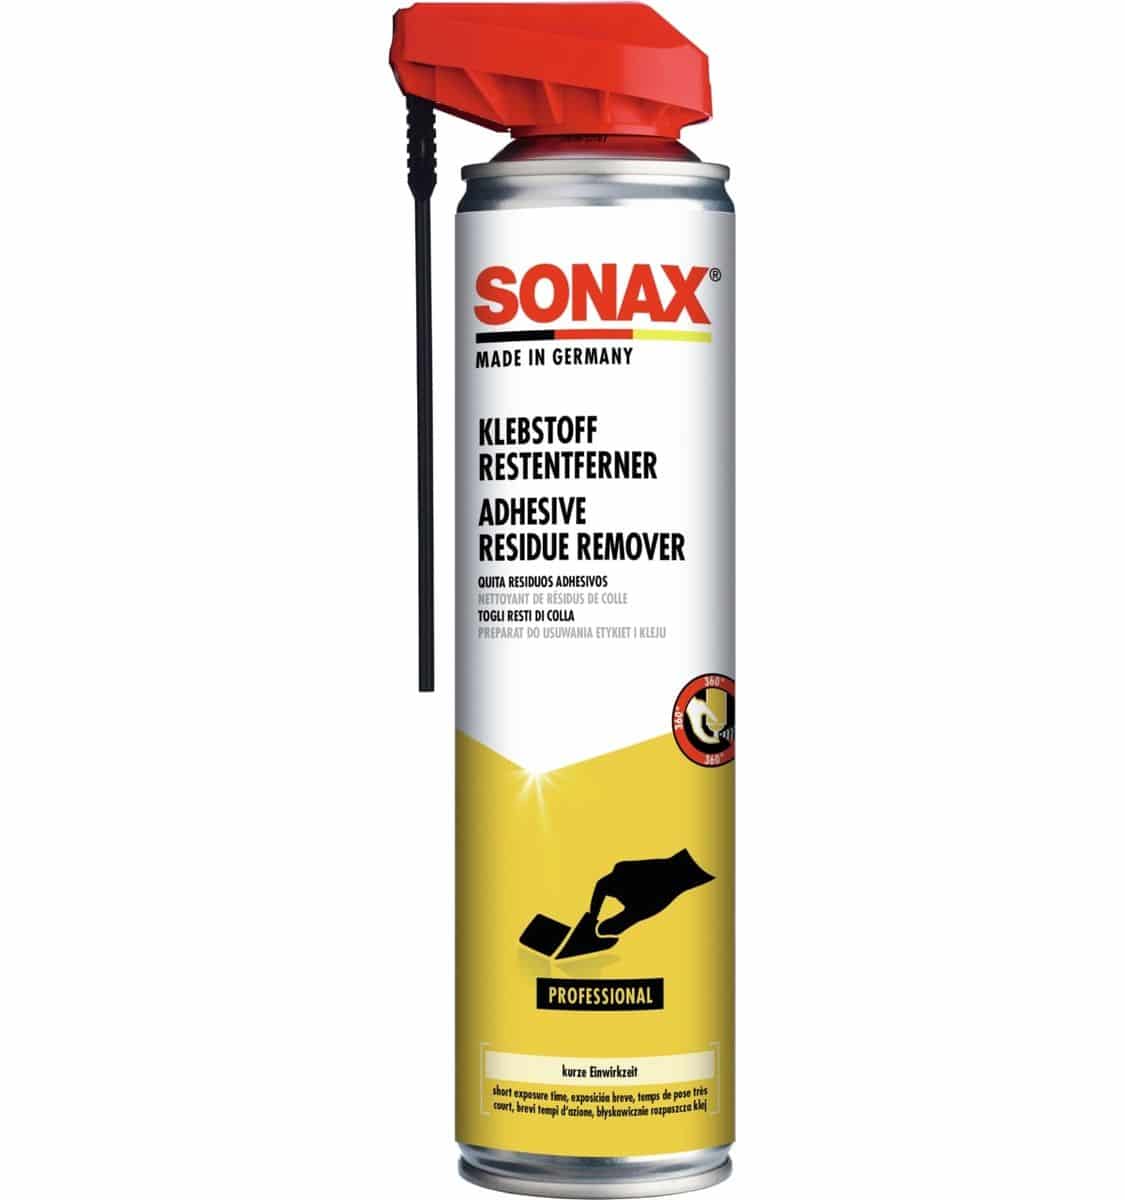 6x Sonax Klebstoffrestentferner 400ml Klebstoff Entferner Etikettenentferner